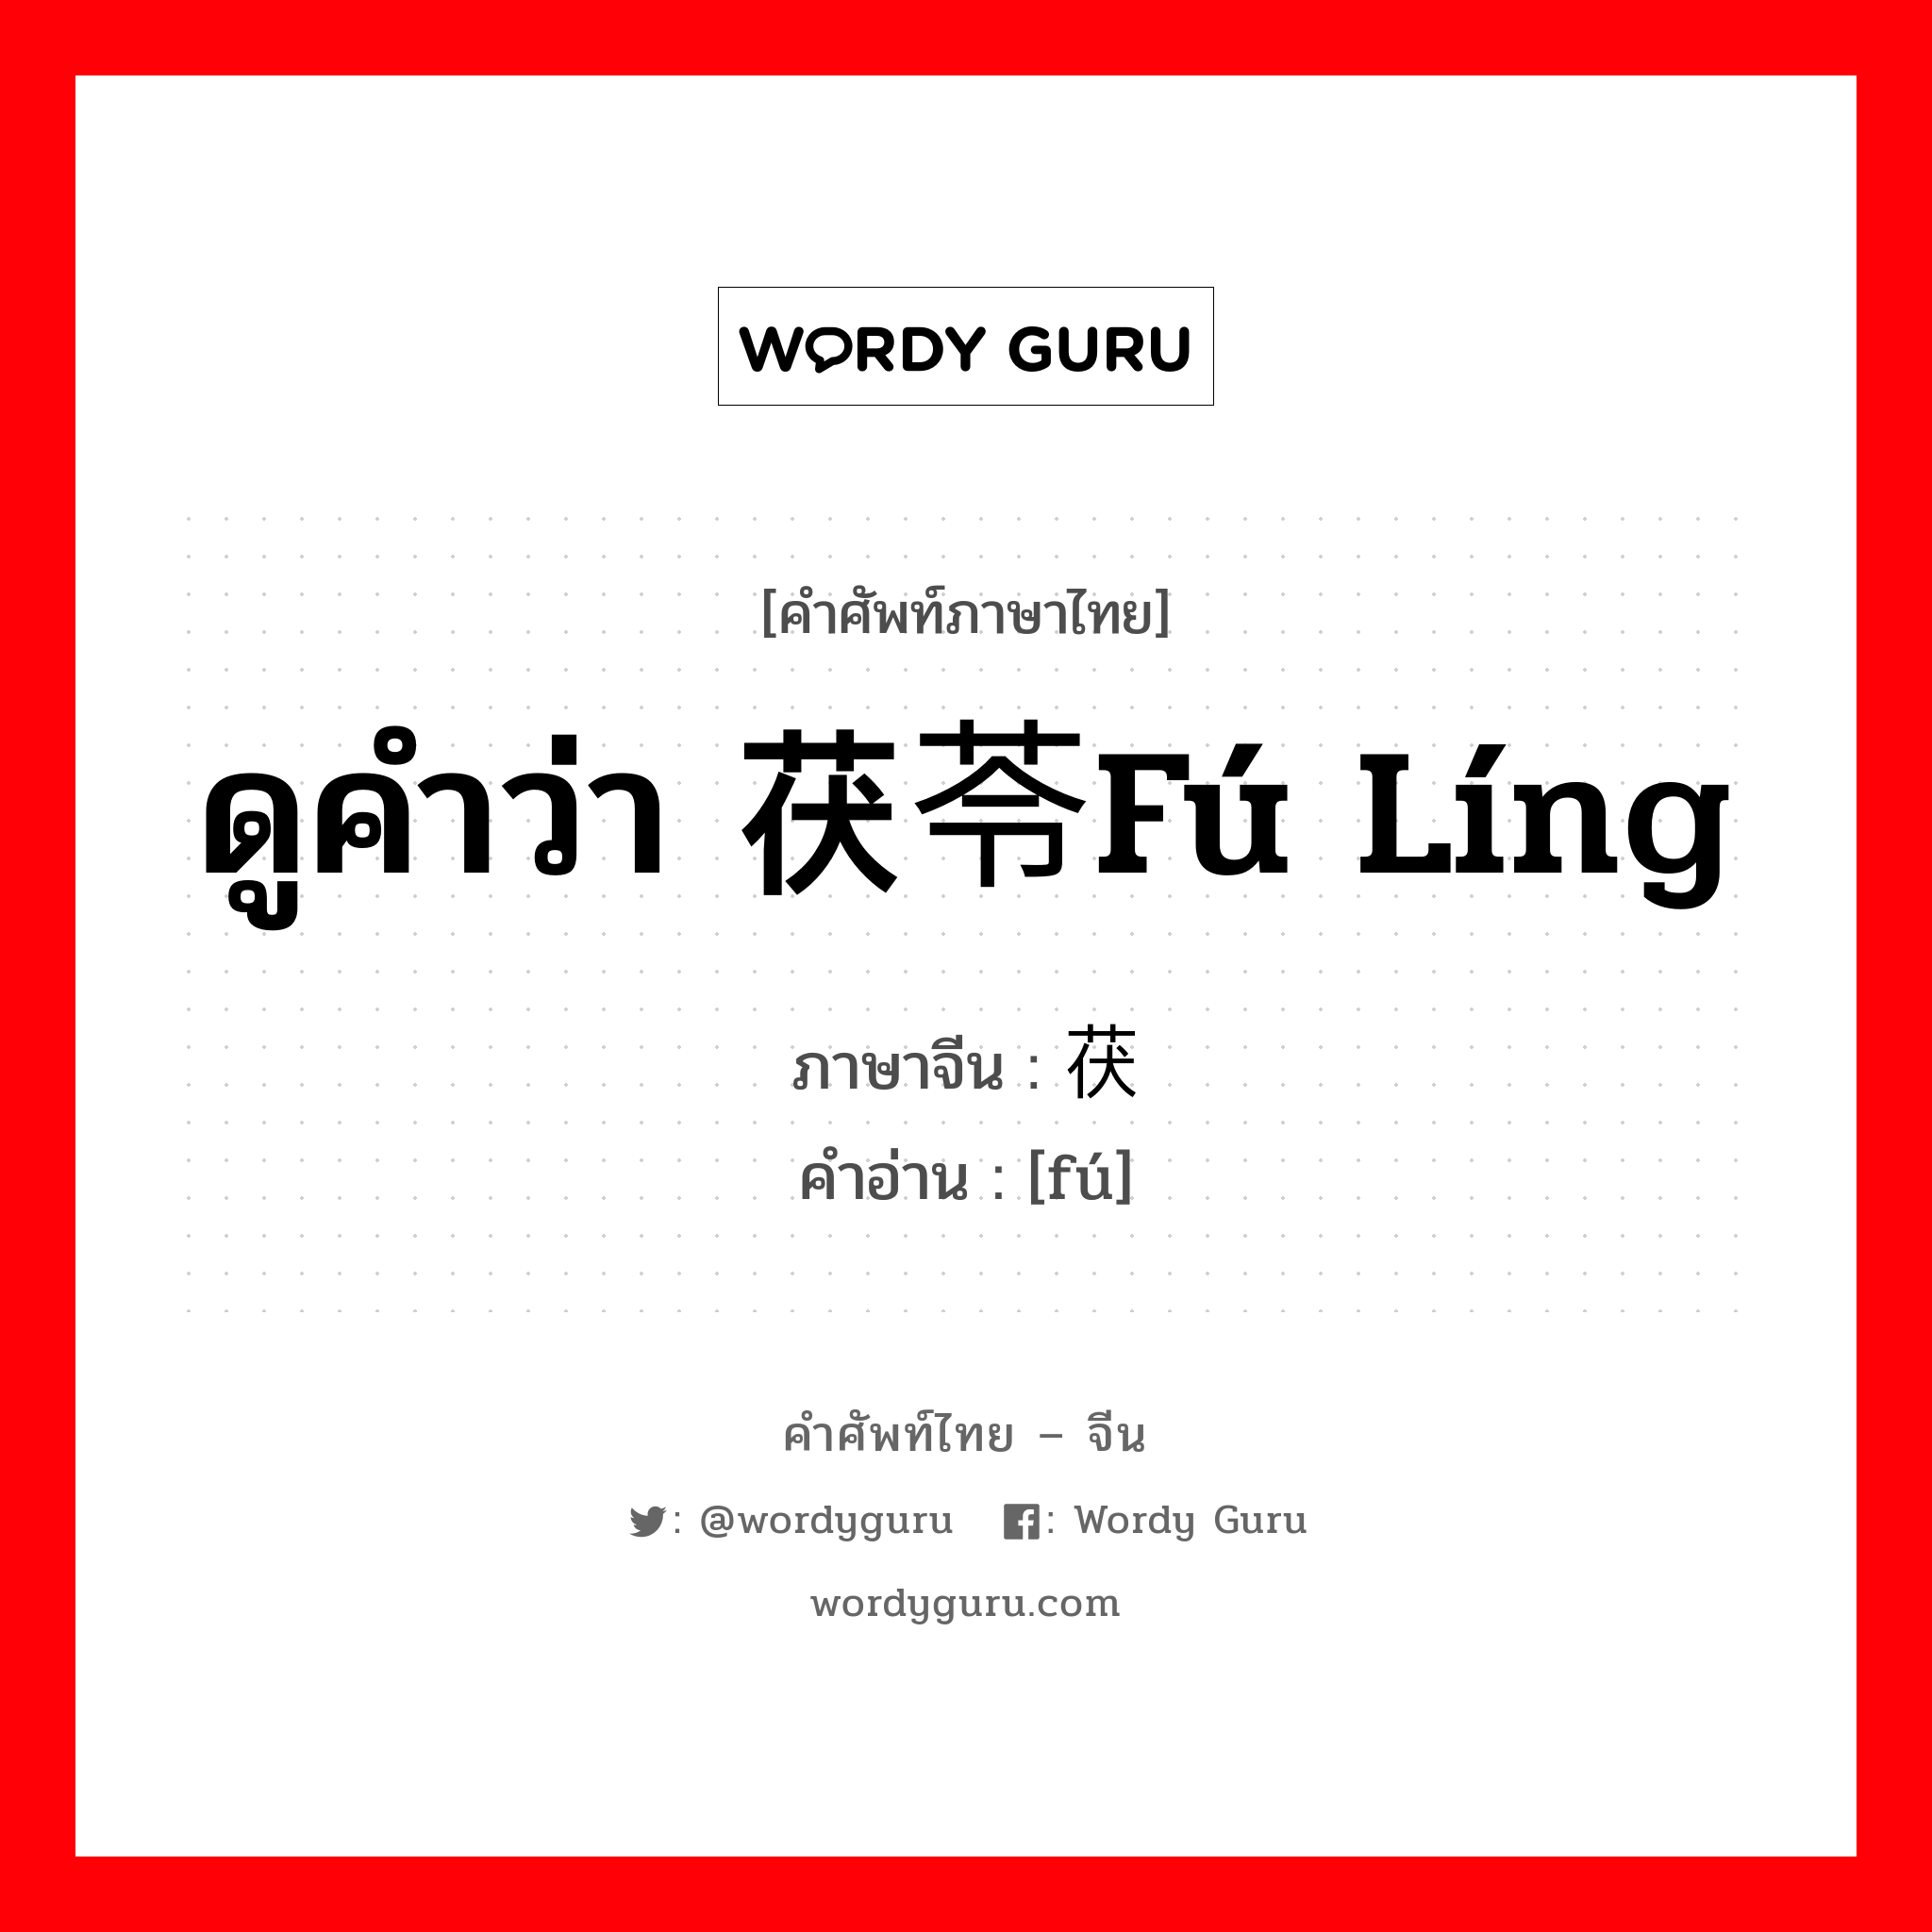 ดูคำว่า 茯苓fú líng ภาษาจีนคืออะไร, คำศัพท์ภาษาไทย - จีน ดูคำว่า 茯苓fú líng ภาษาจีน 茯 คำอ่าน [fú]